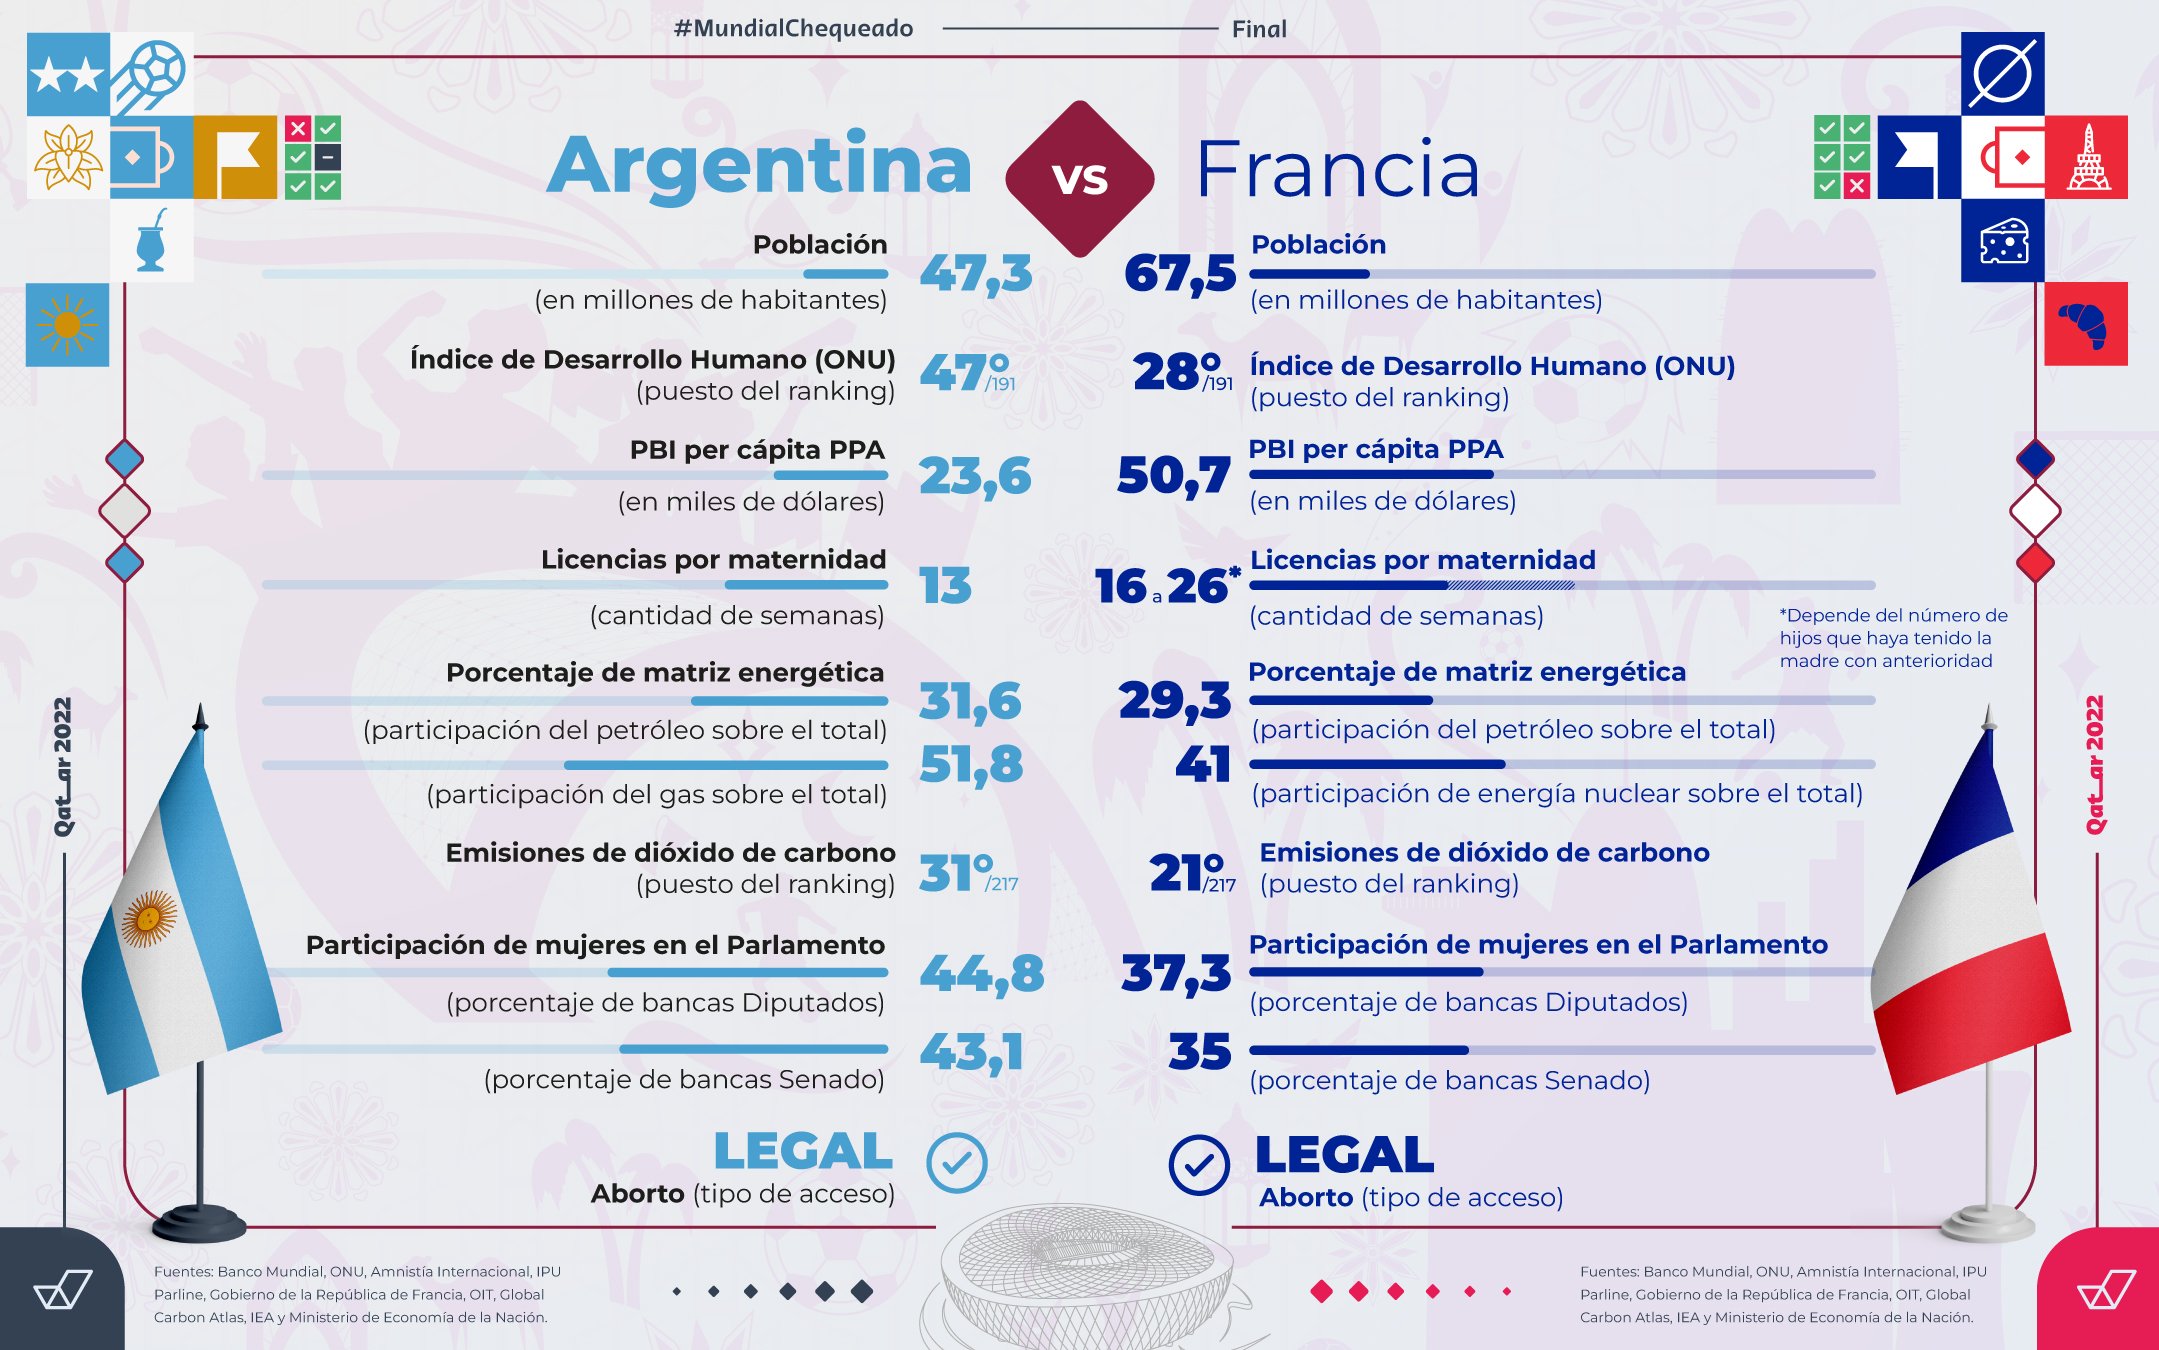 La final del Mundial de Qatar 2022: ¿cómo están la Argentina y Francia en economía, género y ambiente?